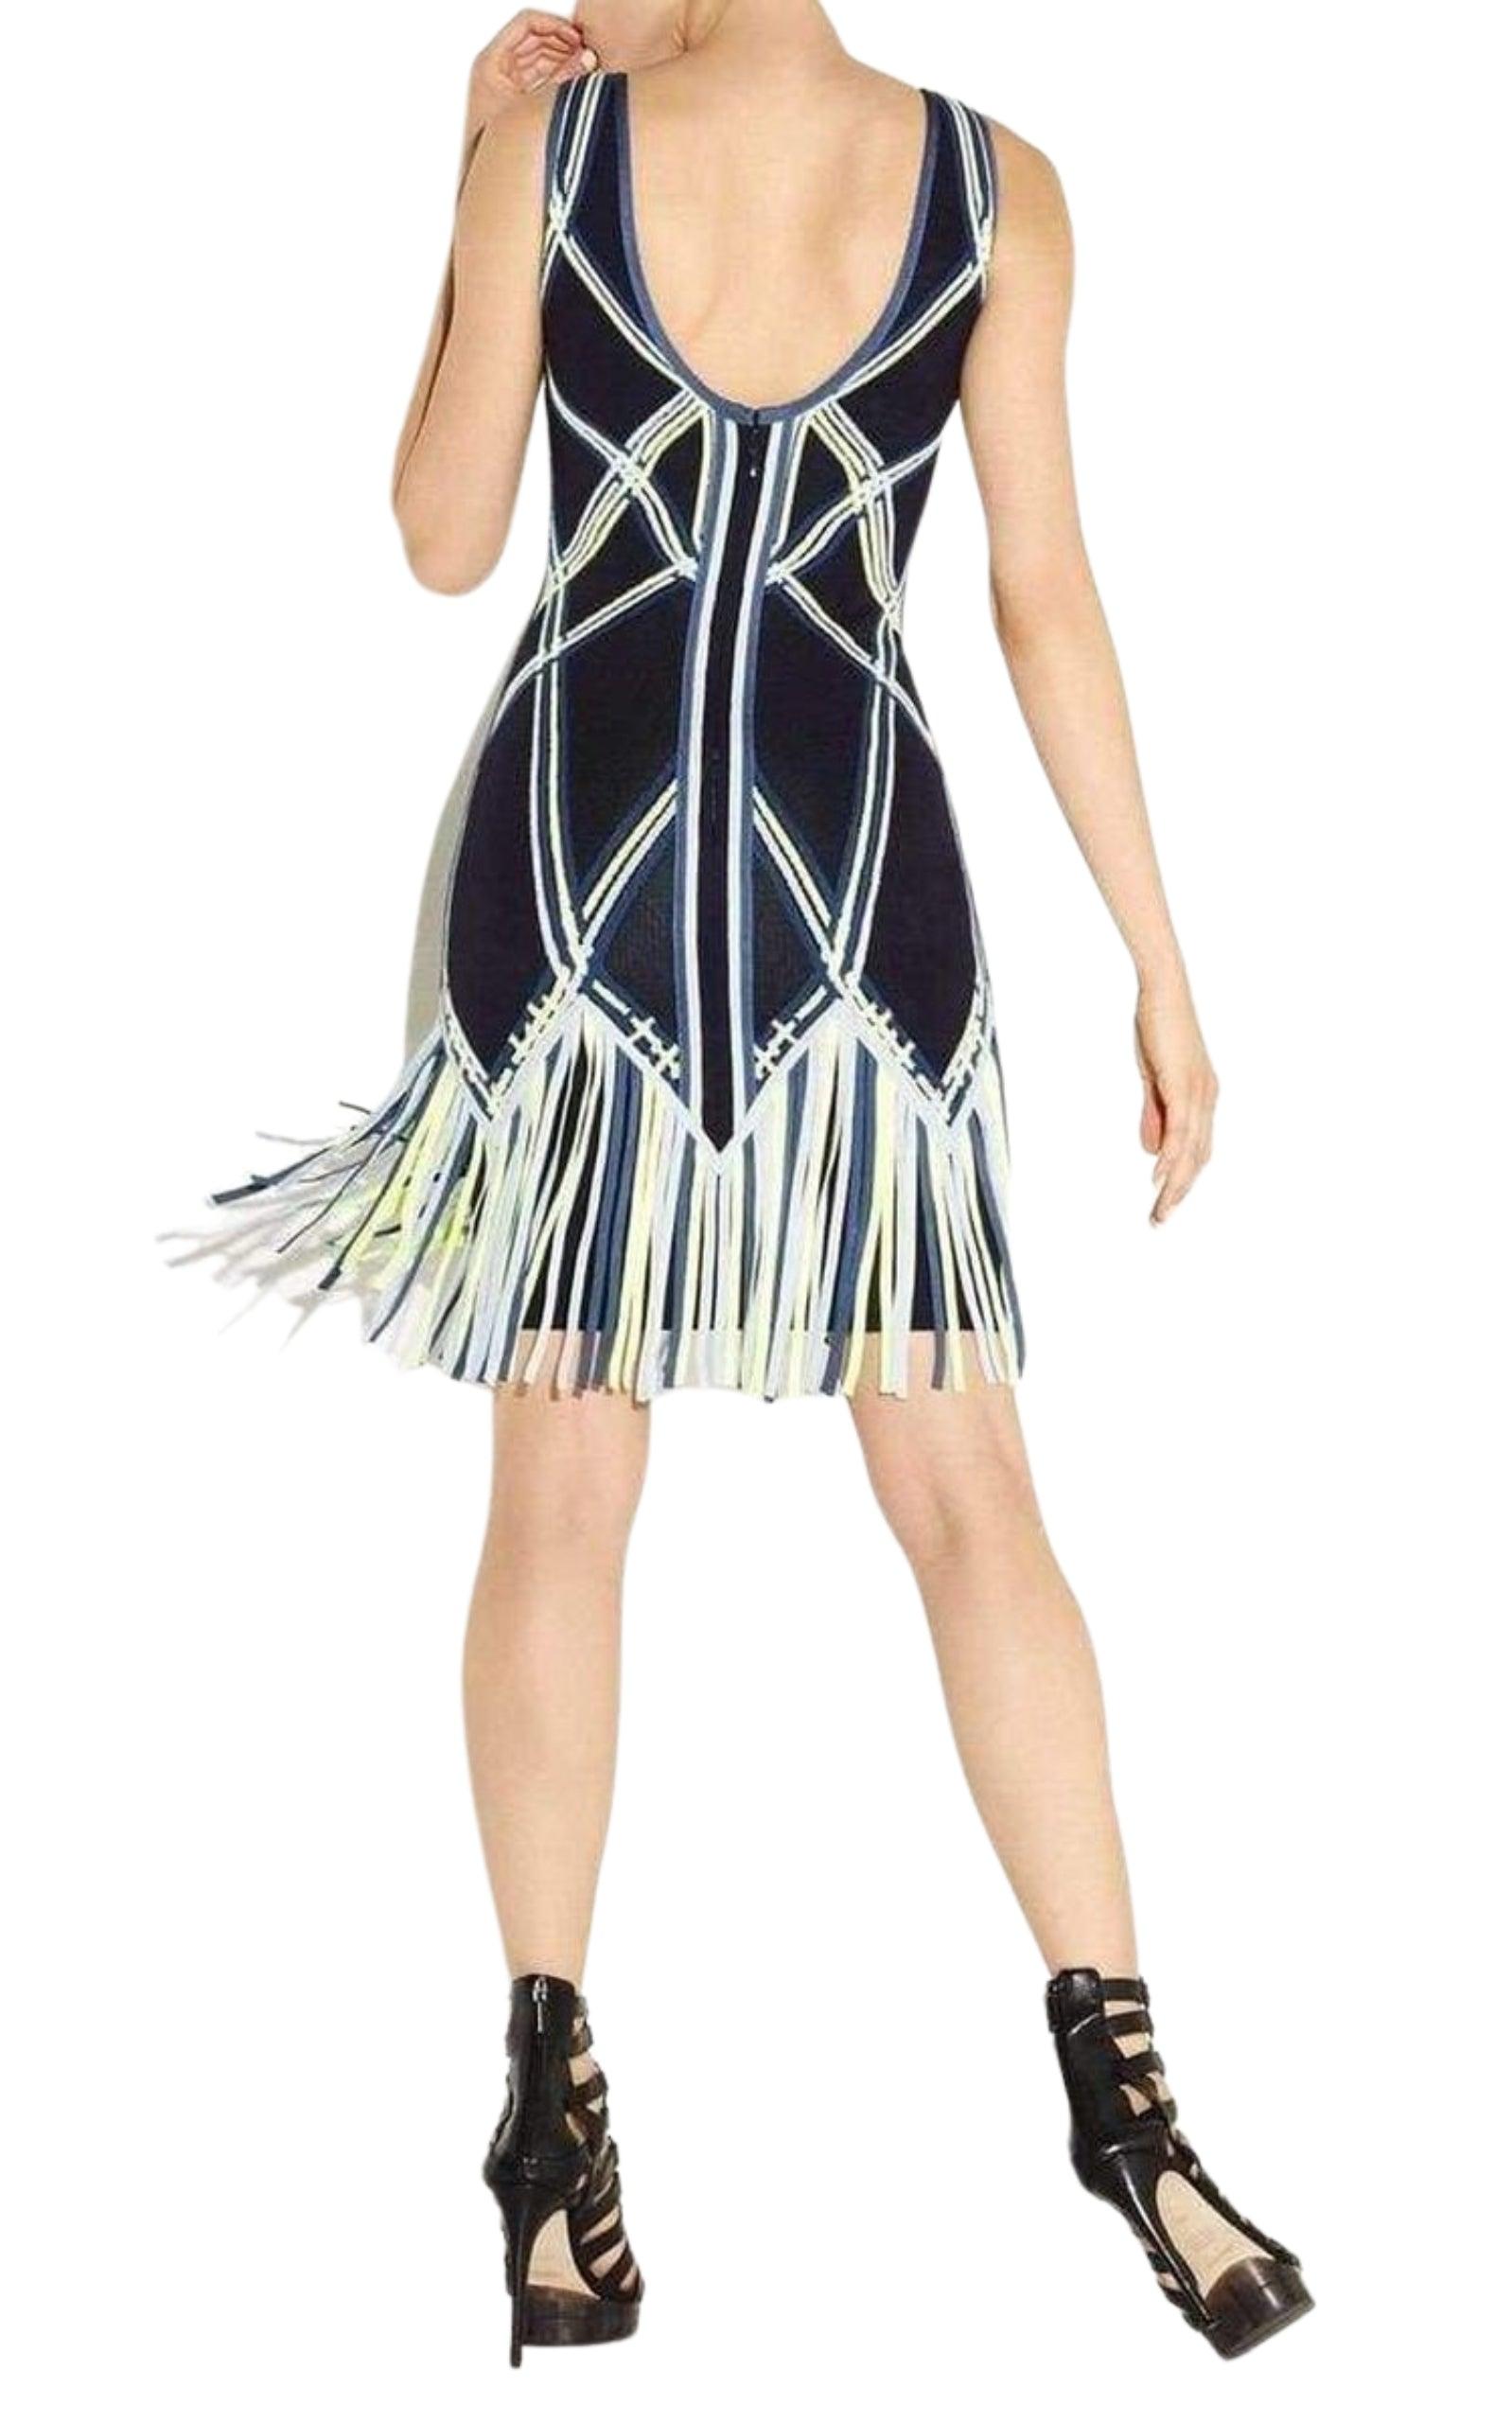  Herve LegerCharoletta Basket Weave Fringe Jacquard Dress - Runway Catalog